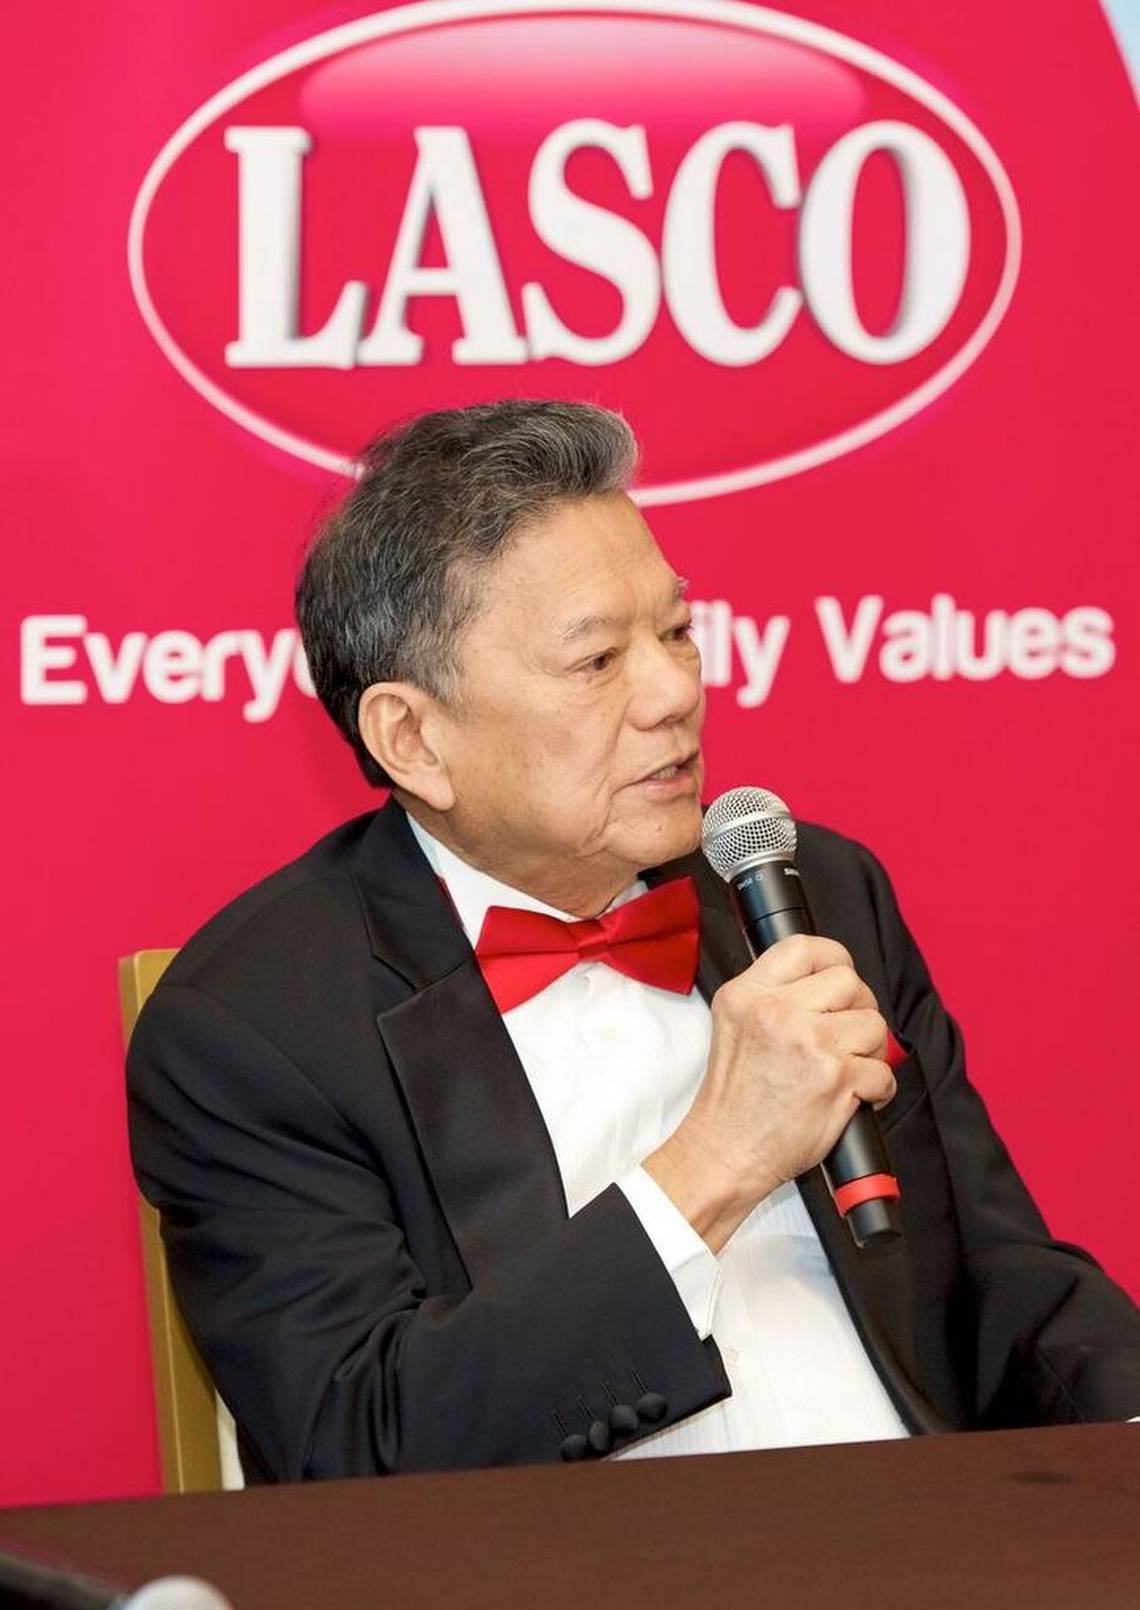 LASCO founder, Jamaican businessman, Lascelles Chin passes away